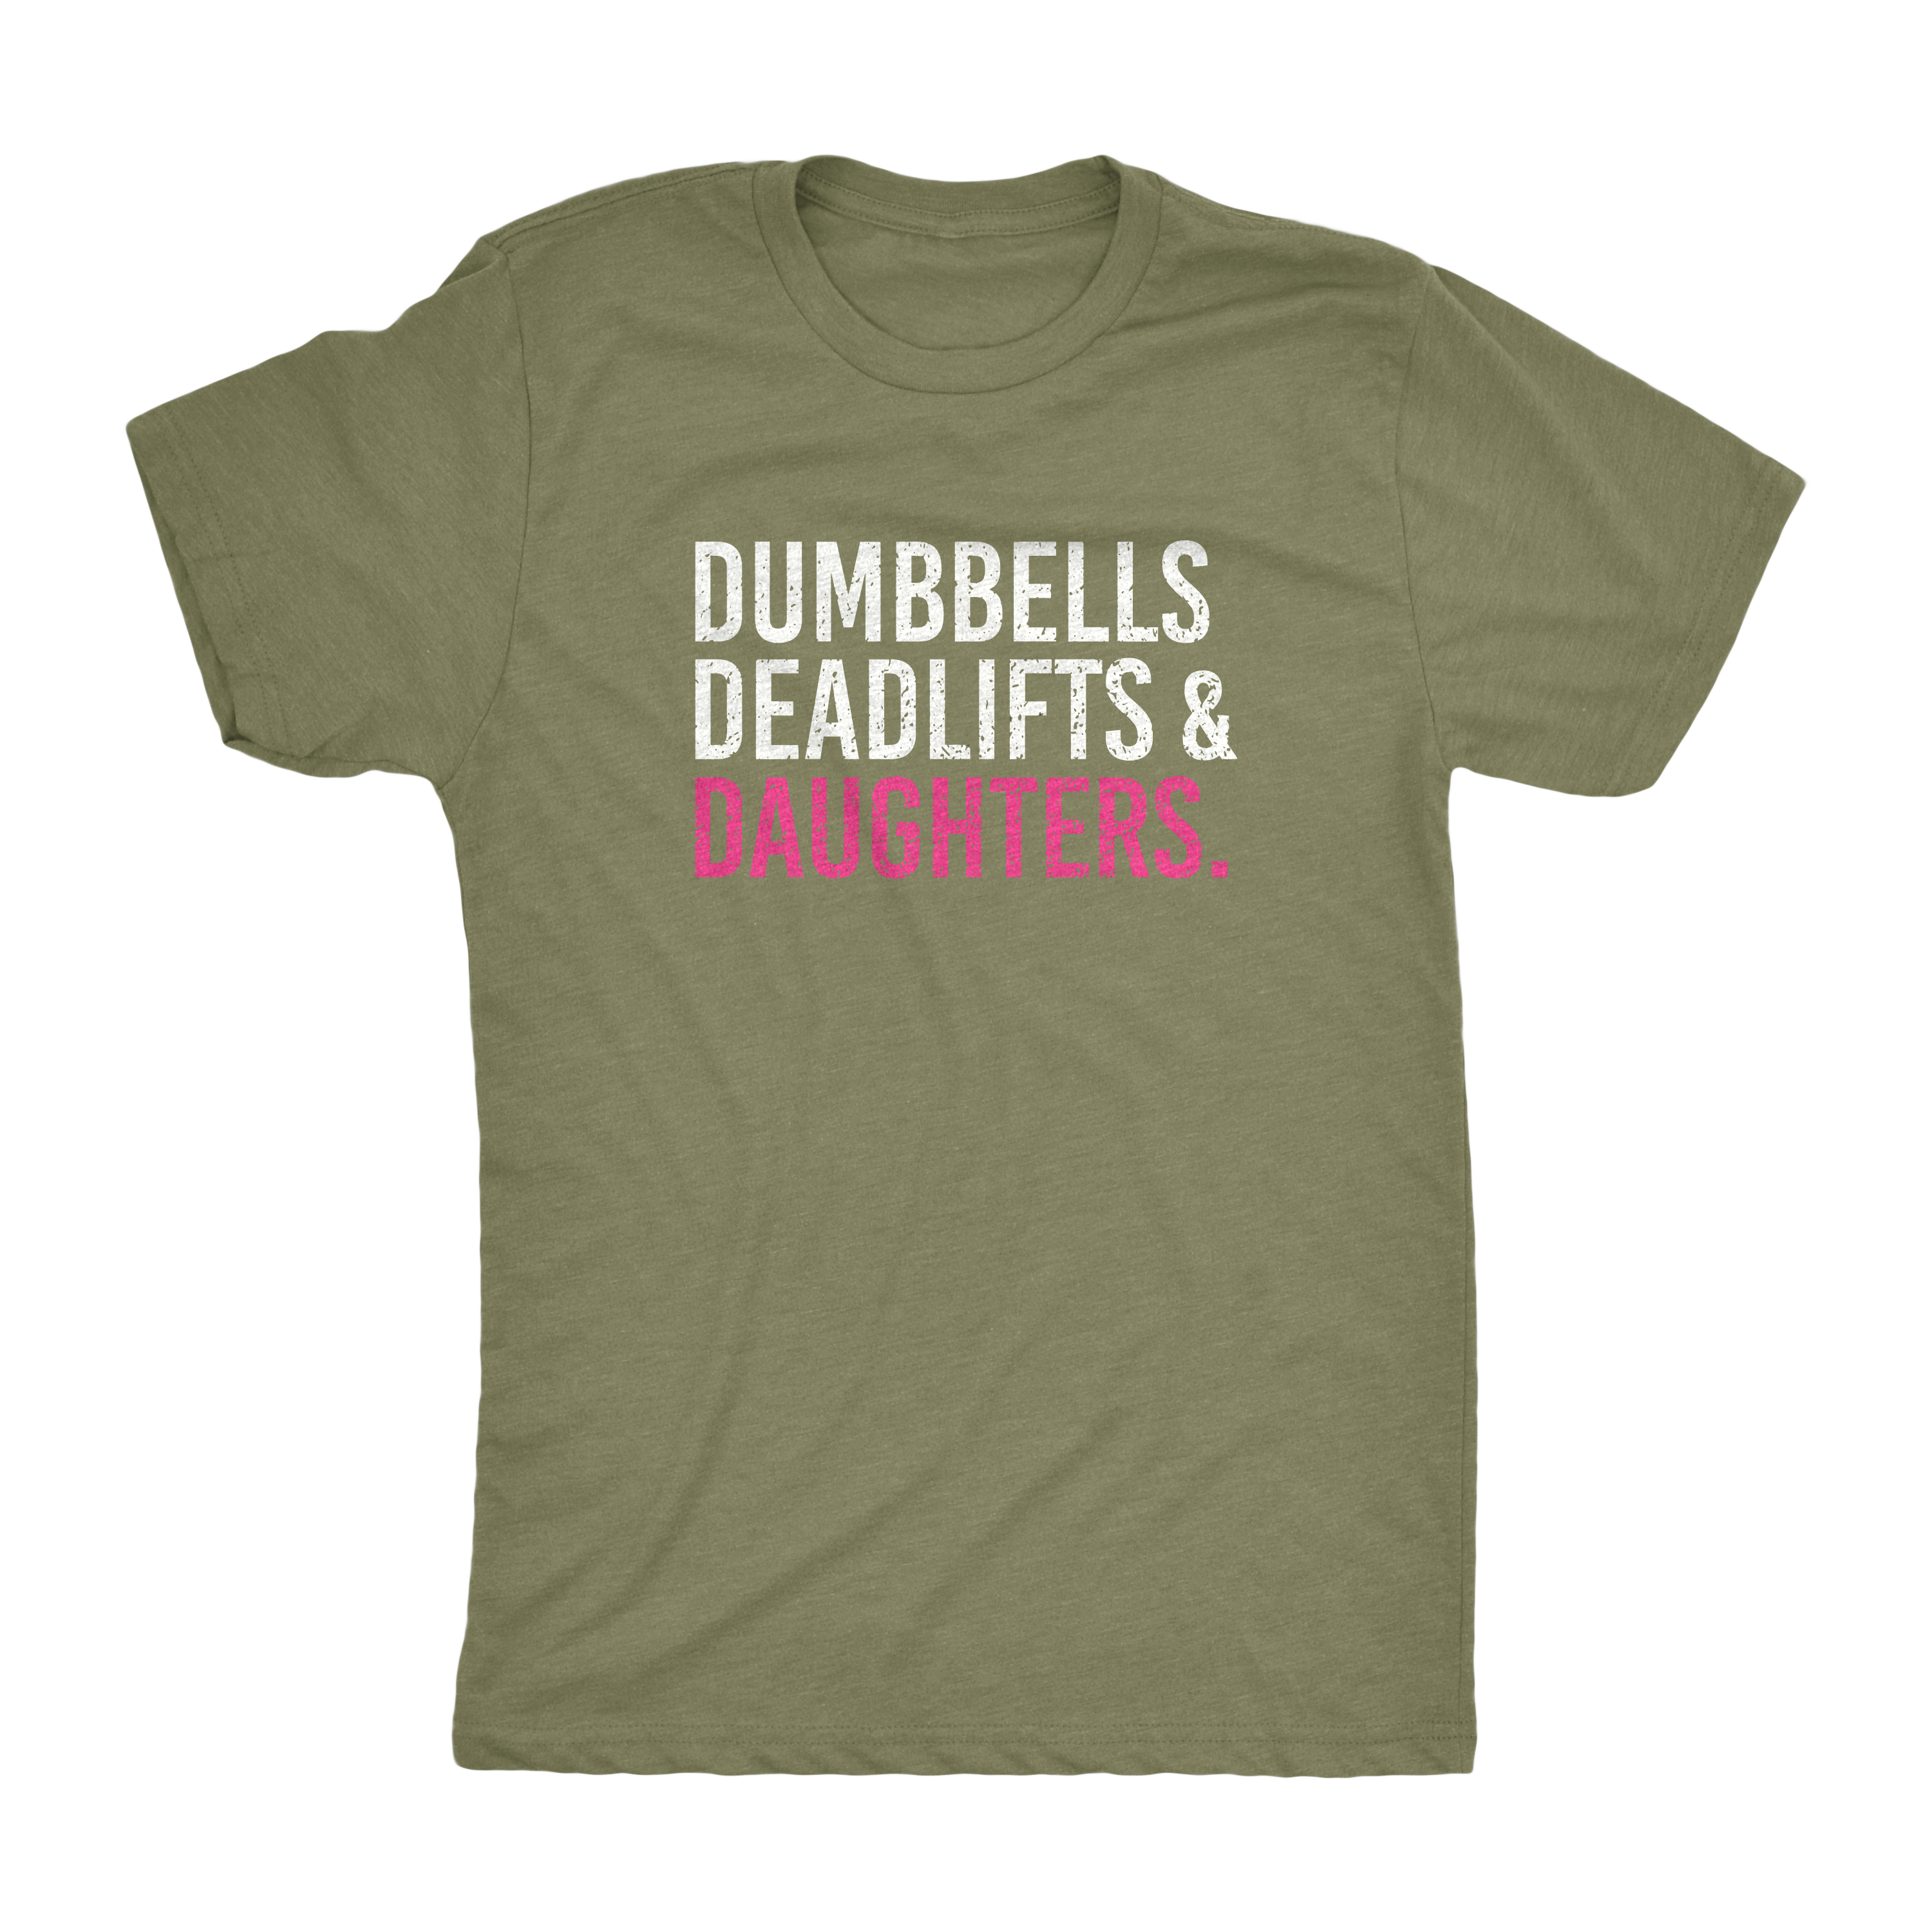 Dumbbells Deadlifts & Daughters Shirt